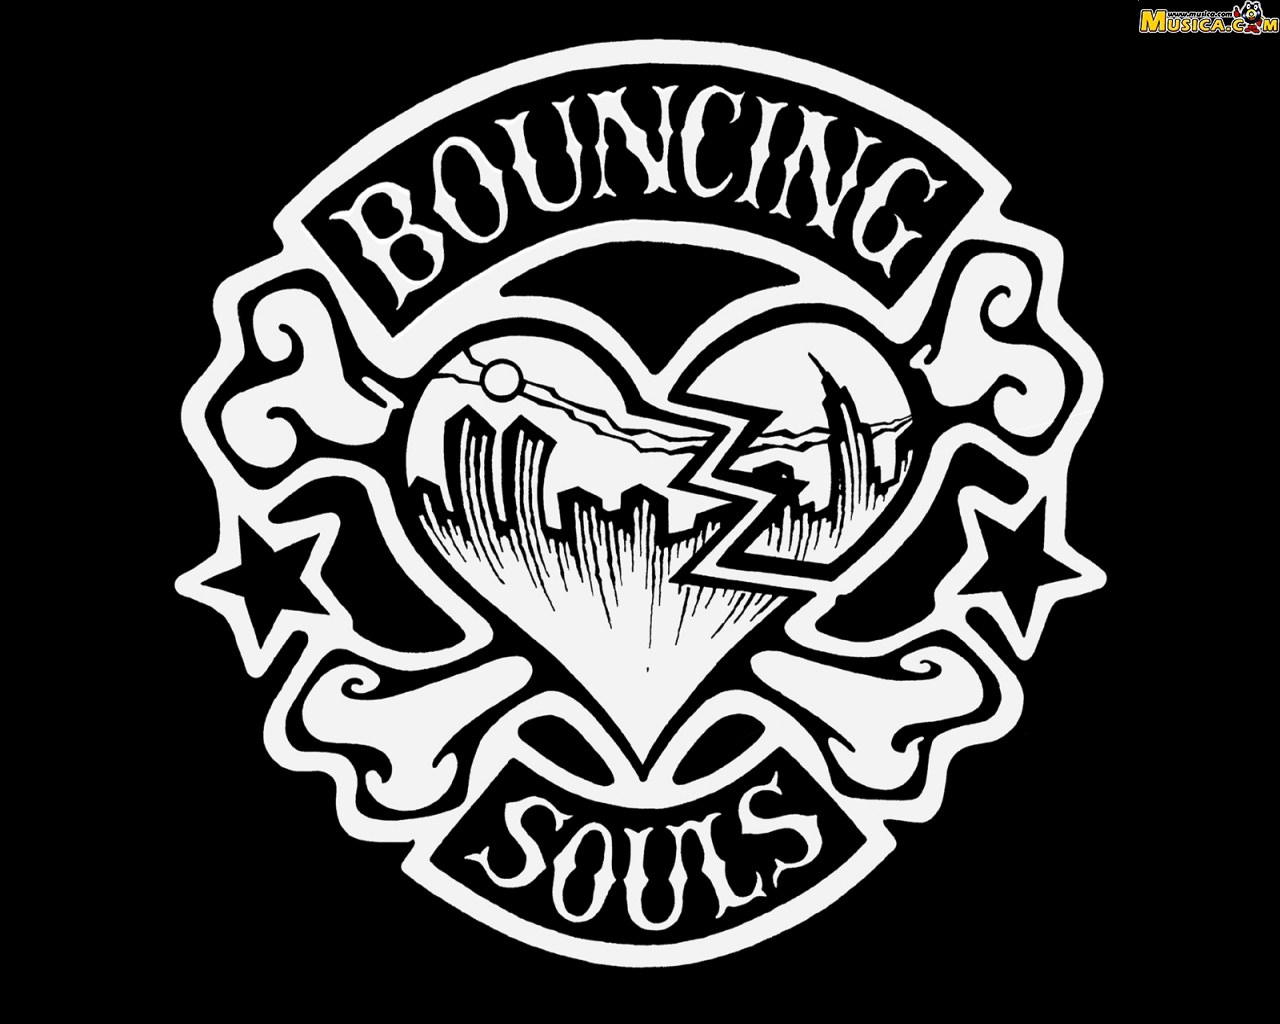 Fondo de pantalla de Bouncing Souls